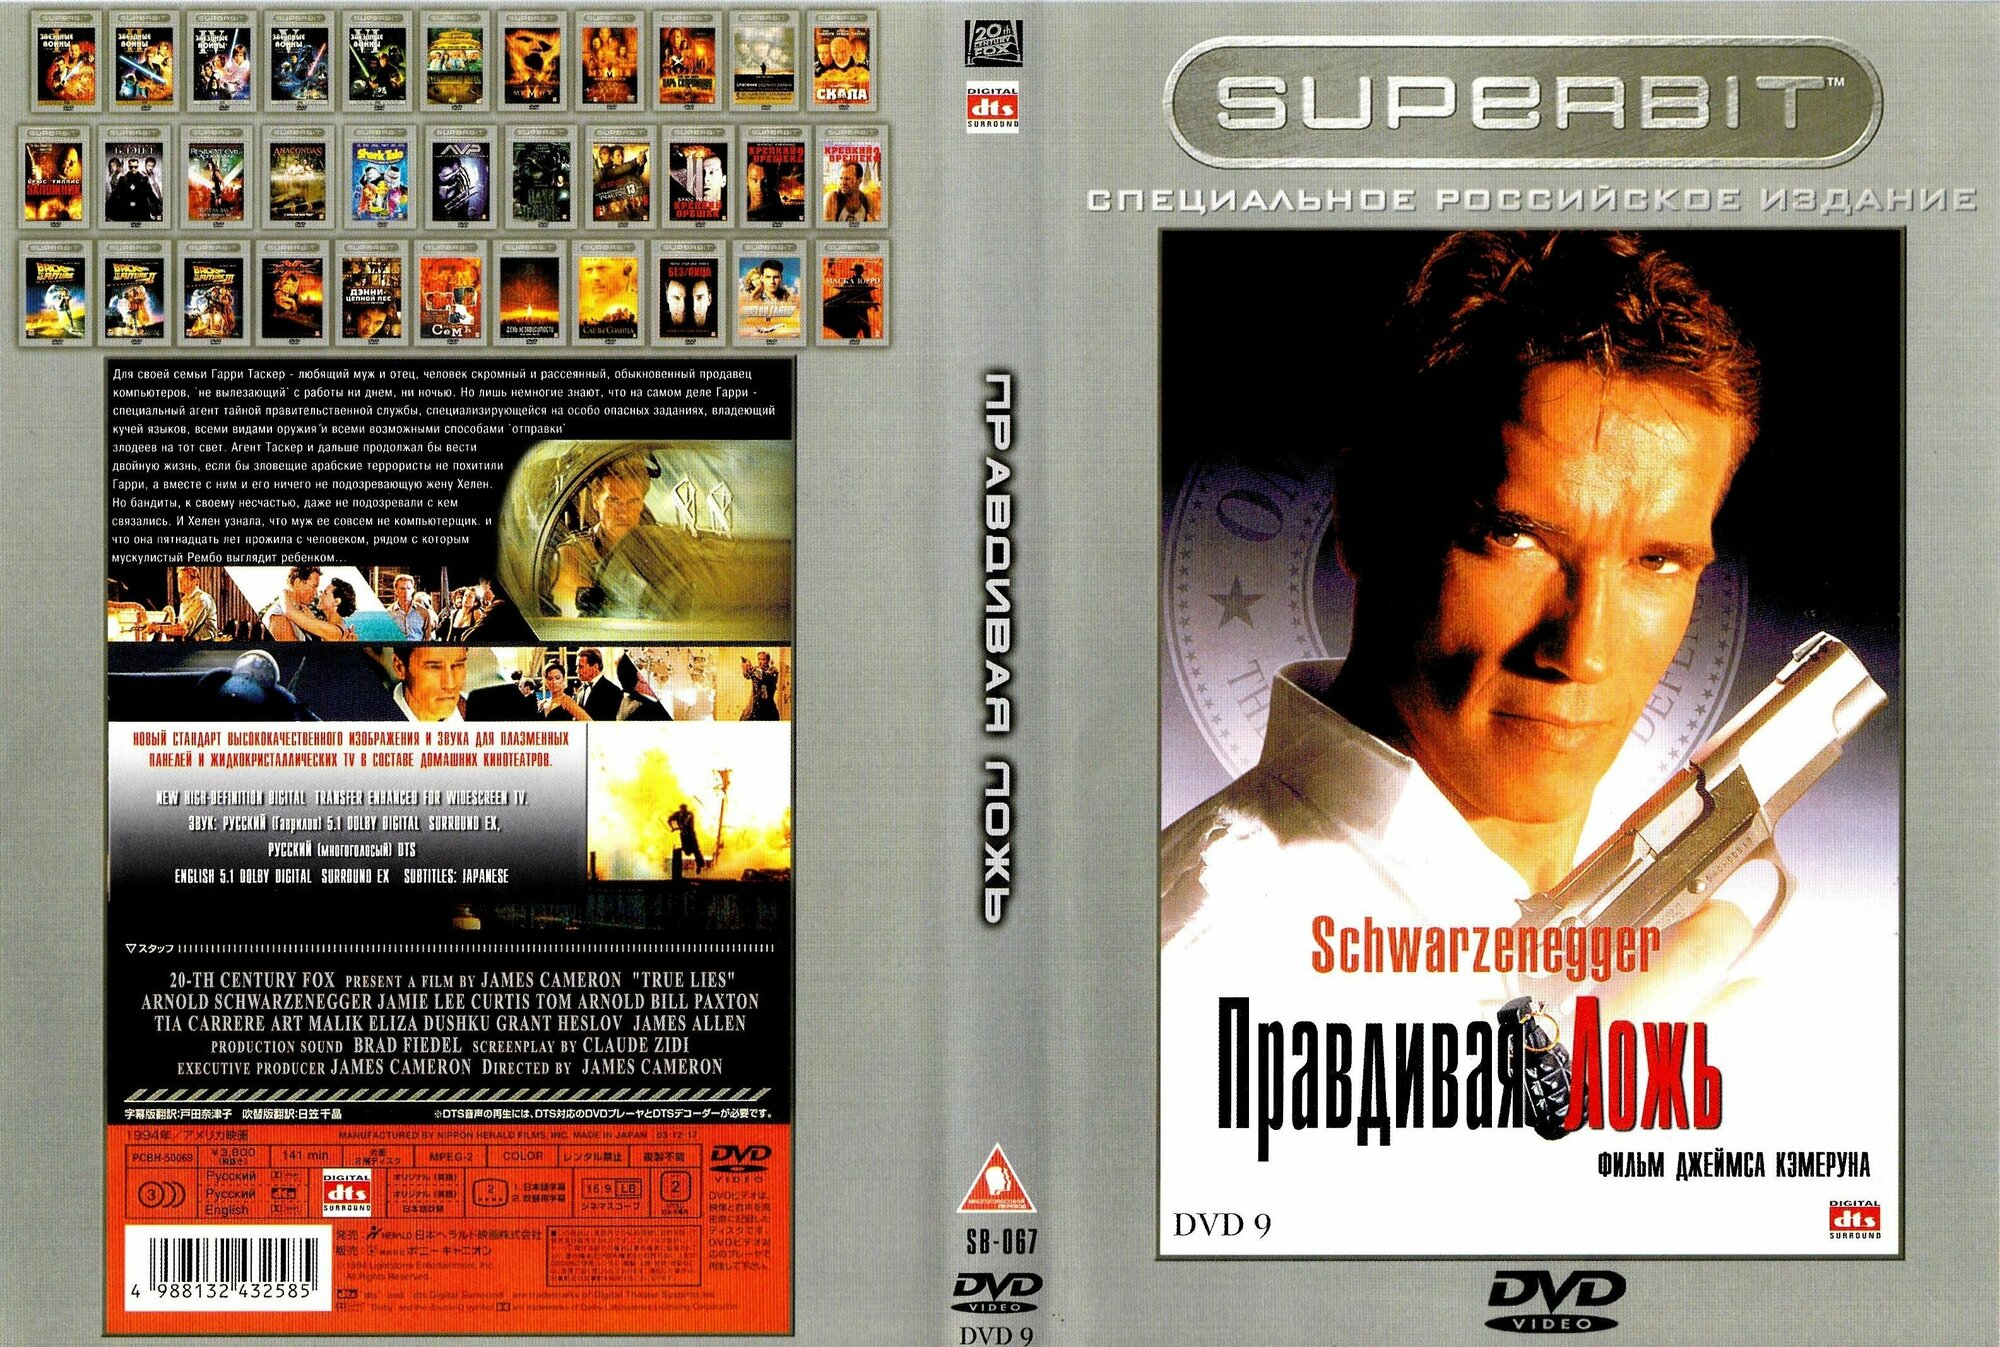 Фильм "Правдивая ложь" 1994г. DVD